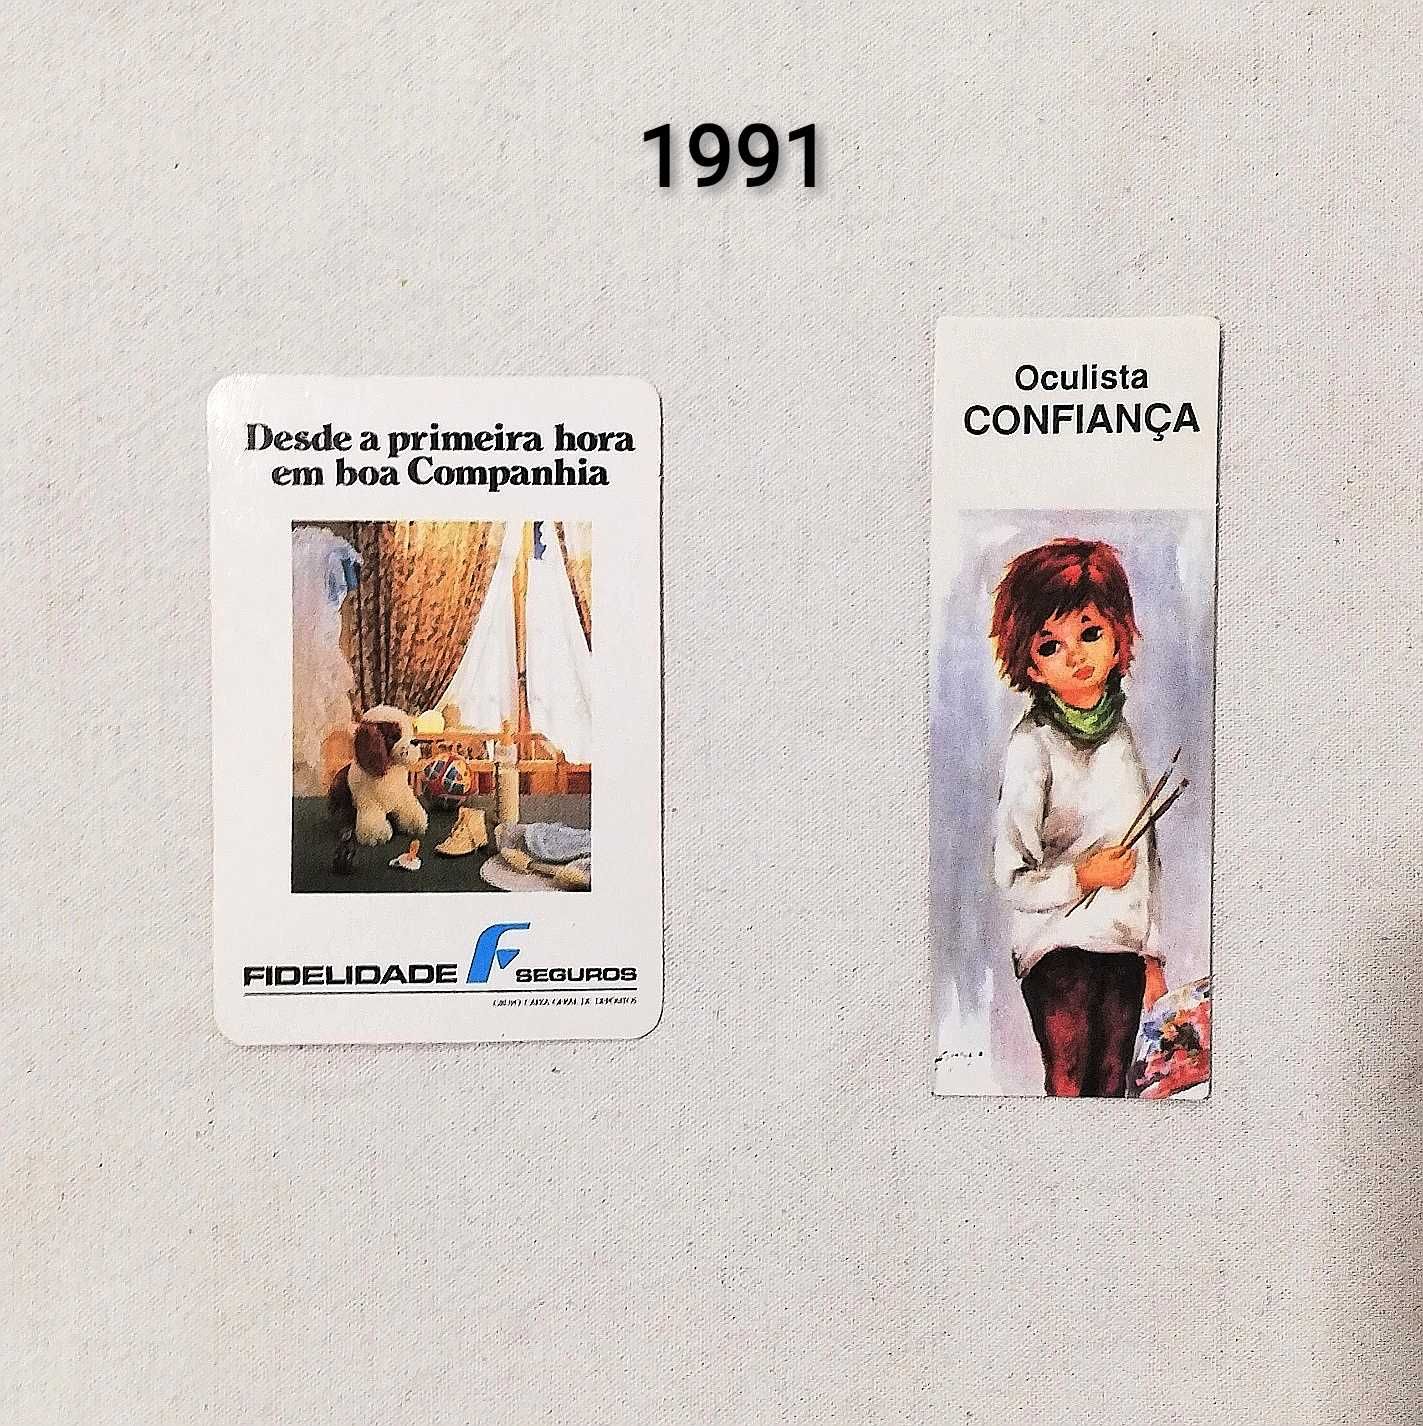 Coleção de 78 calendários de 1985 a 1993